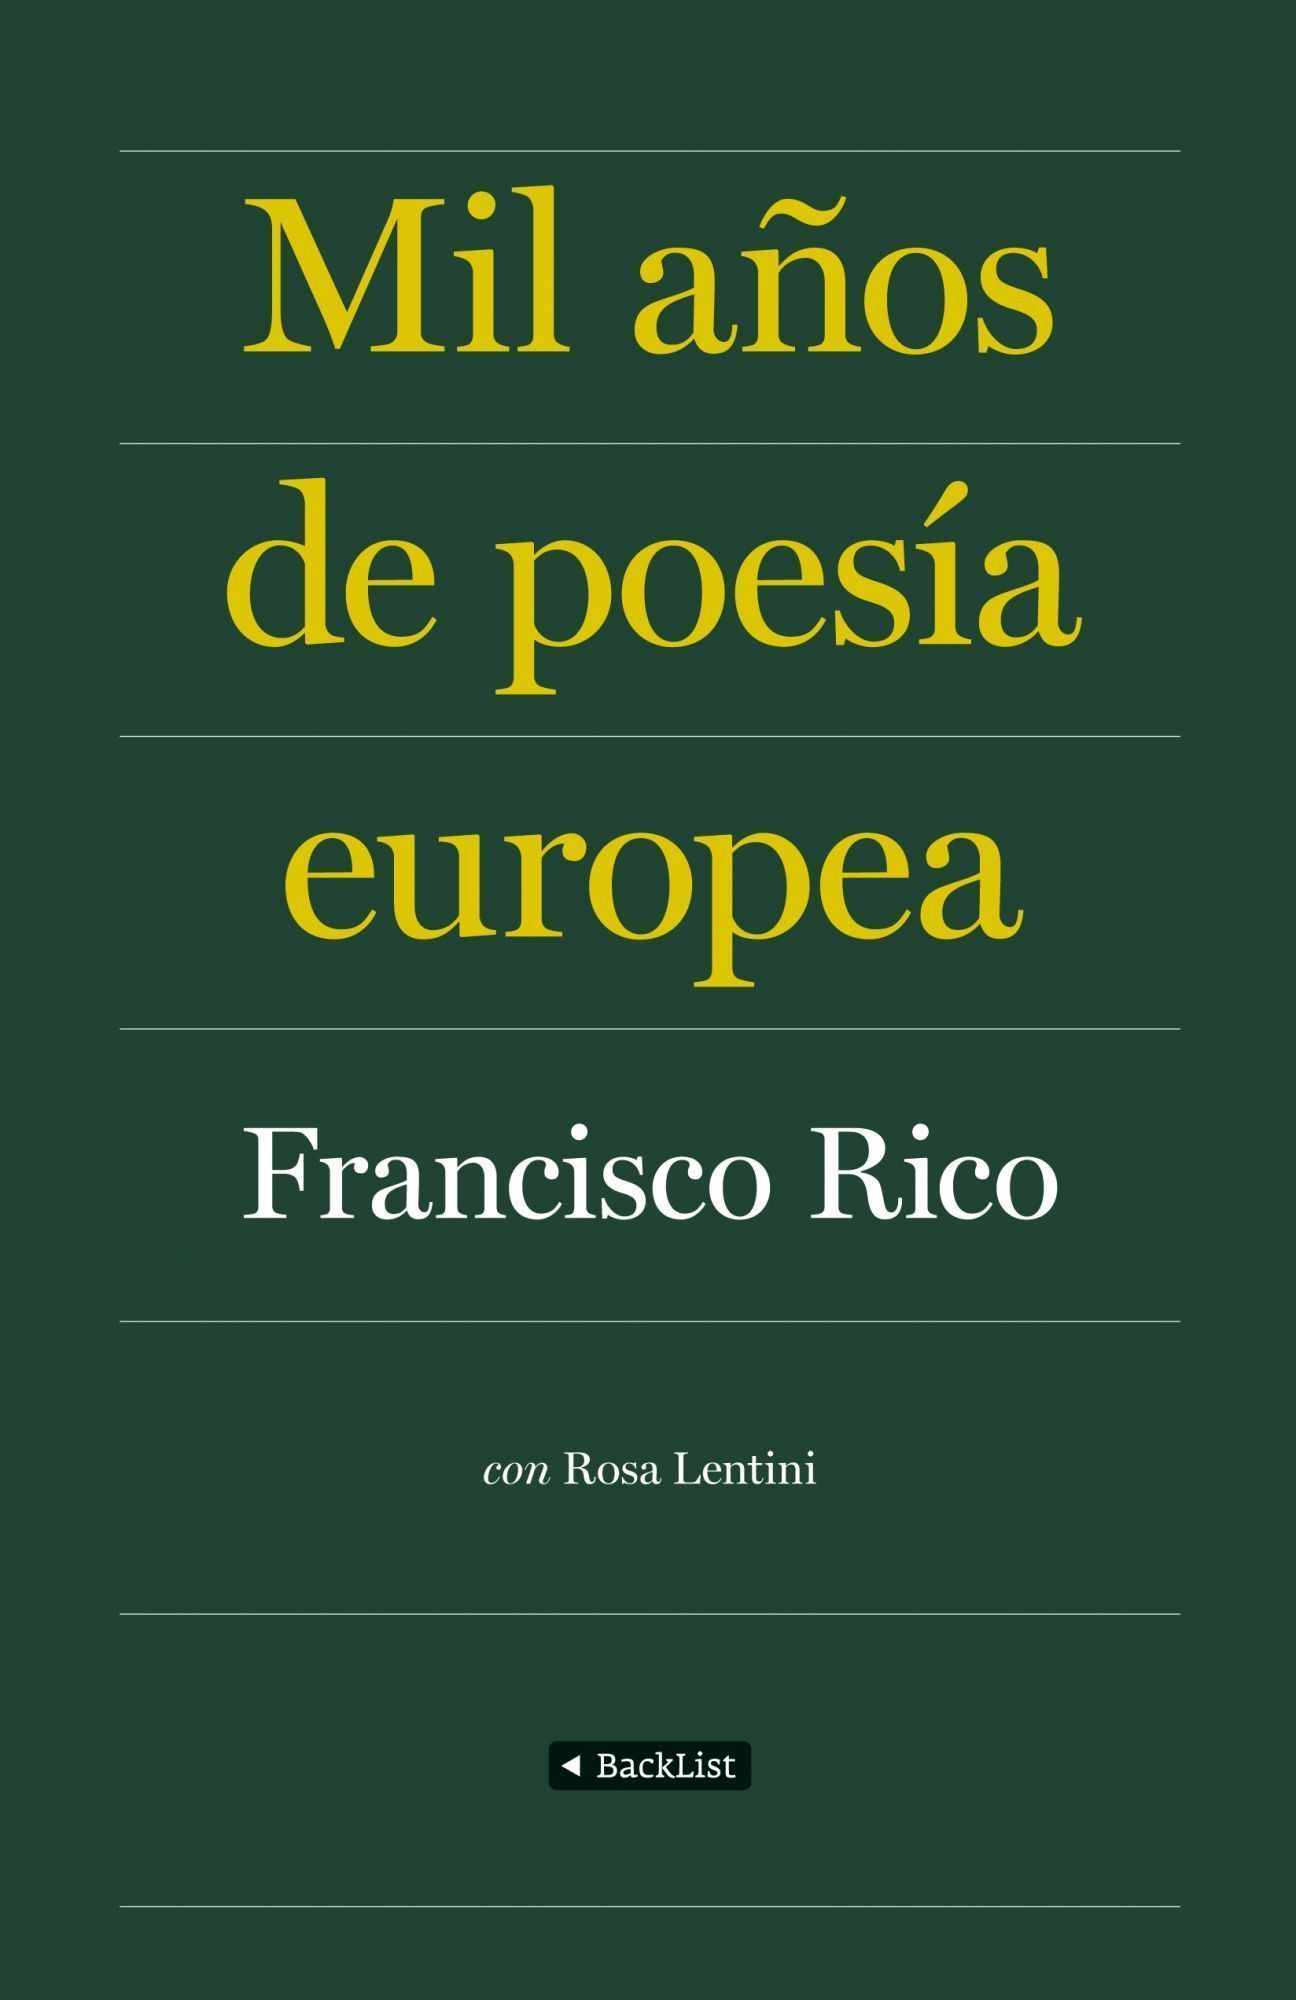 Mil años de poesía europea